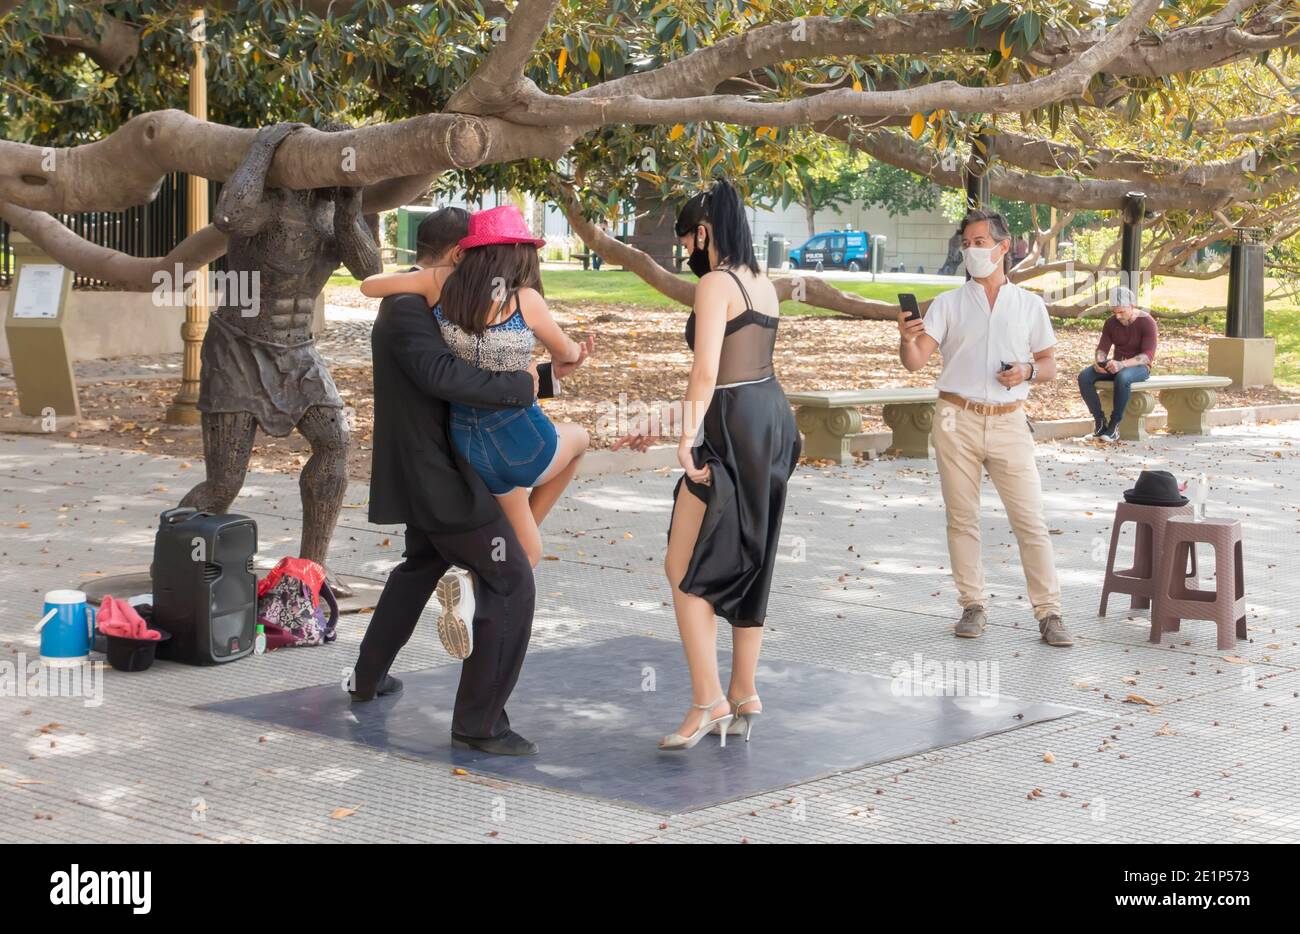 Les touristes avec des masques de visage posent avec des danseurs de tango de rue avec des masques de visage pendant la pandémie Covid-19 à Recoleta, Buenos Aires, Argentine Banque D'Images